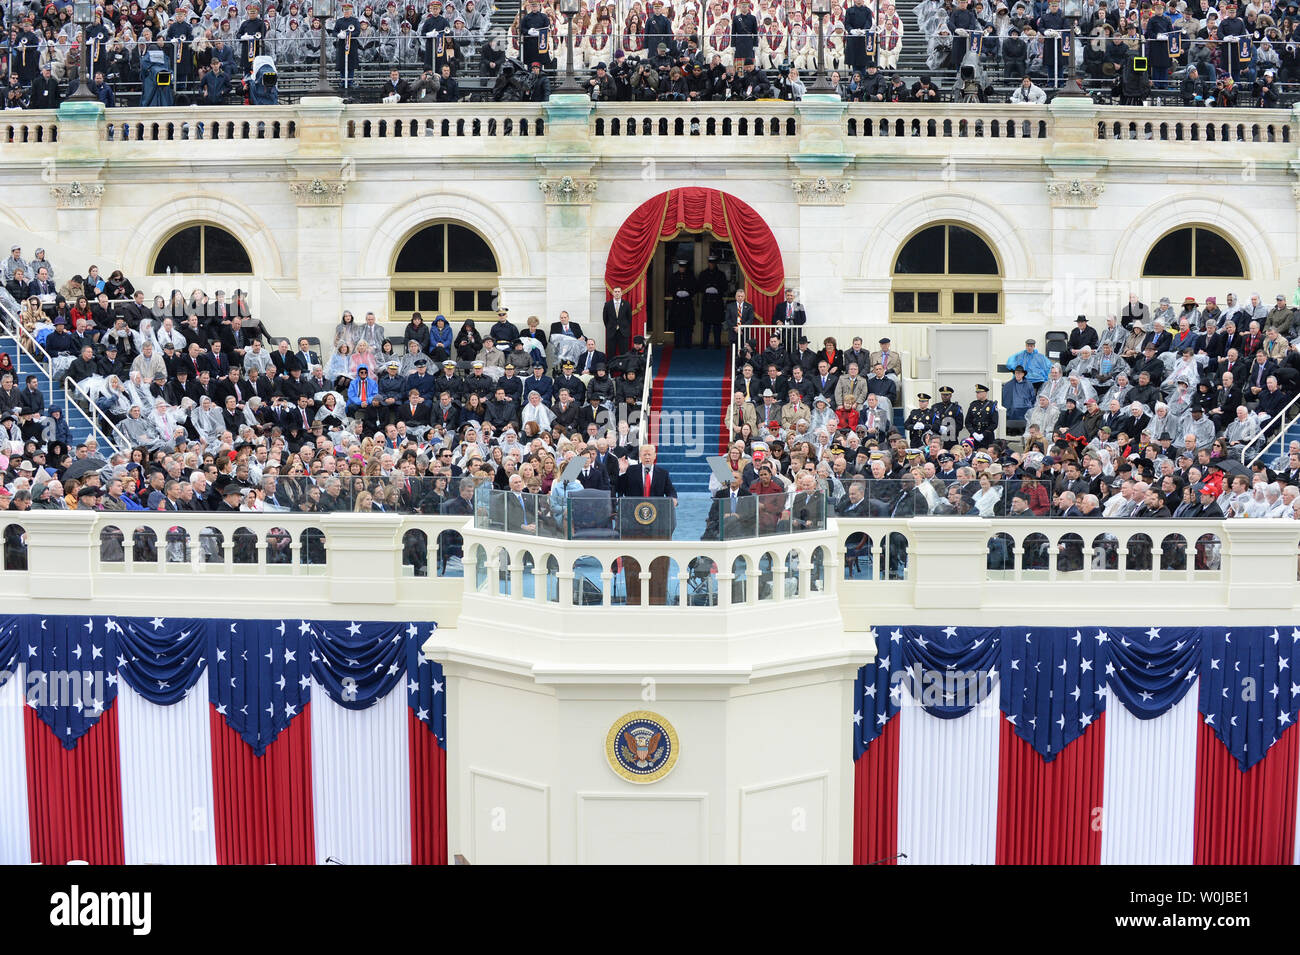 Presidente Donald Trump ofrece la dirección en su toma de posesión el 20 de enero de 2017 en Washington, D.C. el triunfo se convirtió en el 45º Presidente de los Estados Unidos. Foto por Pat Benic/UPI Foto de stock